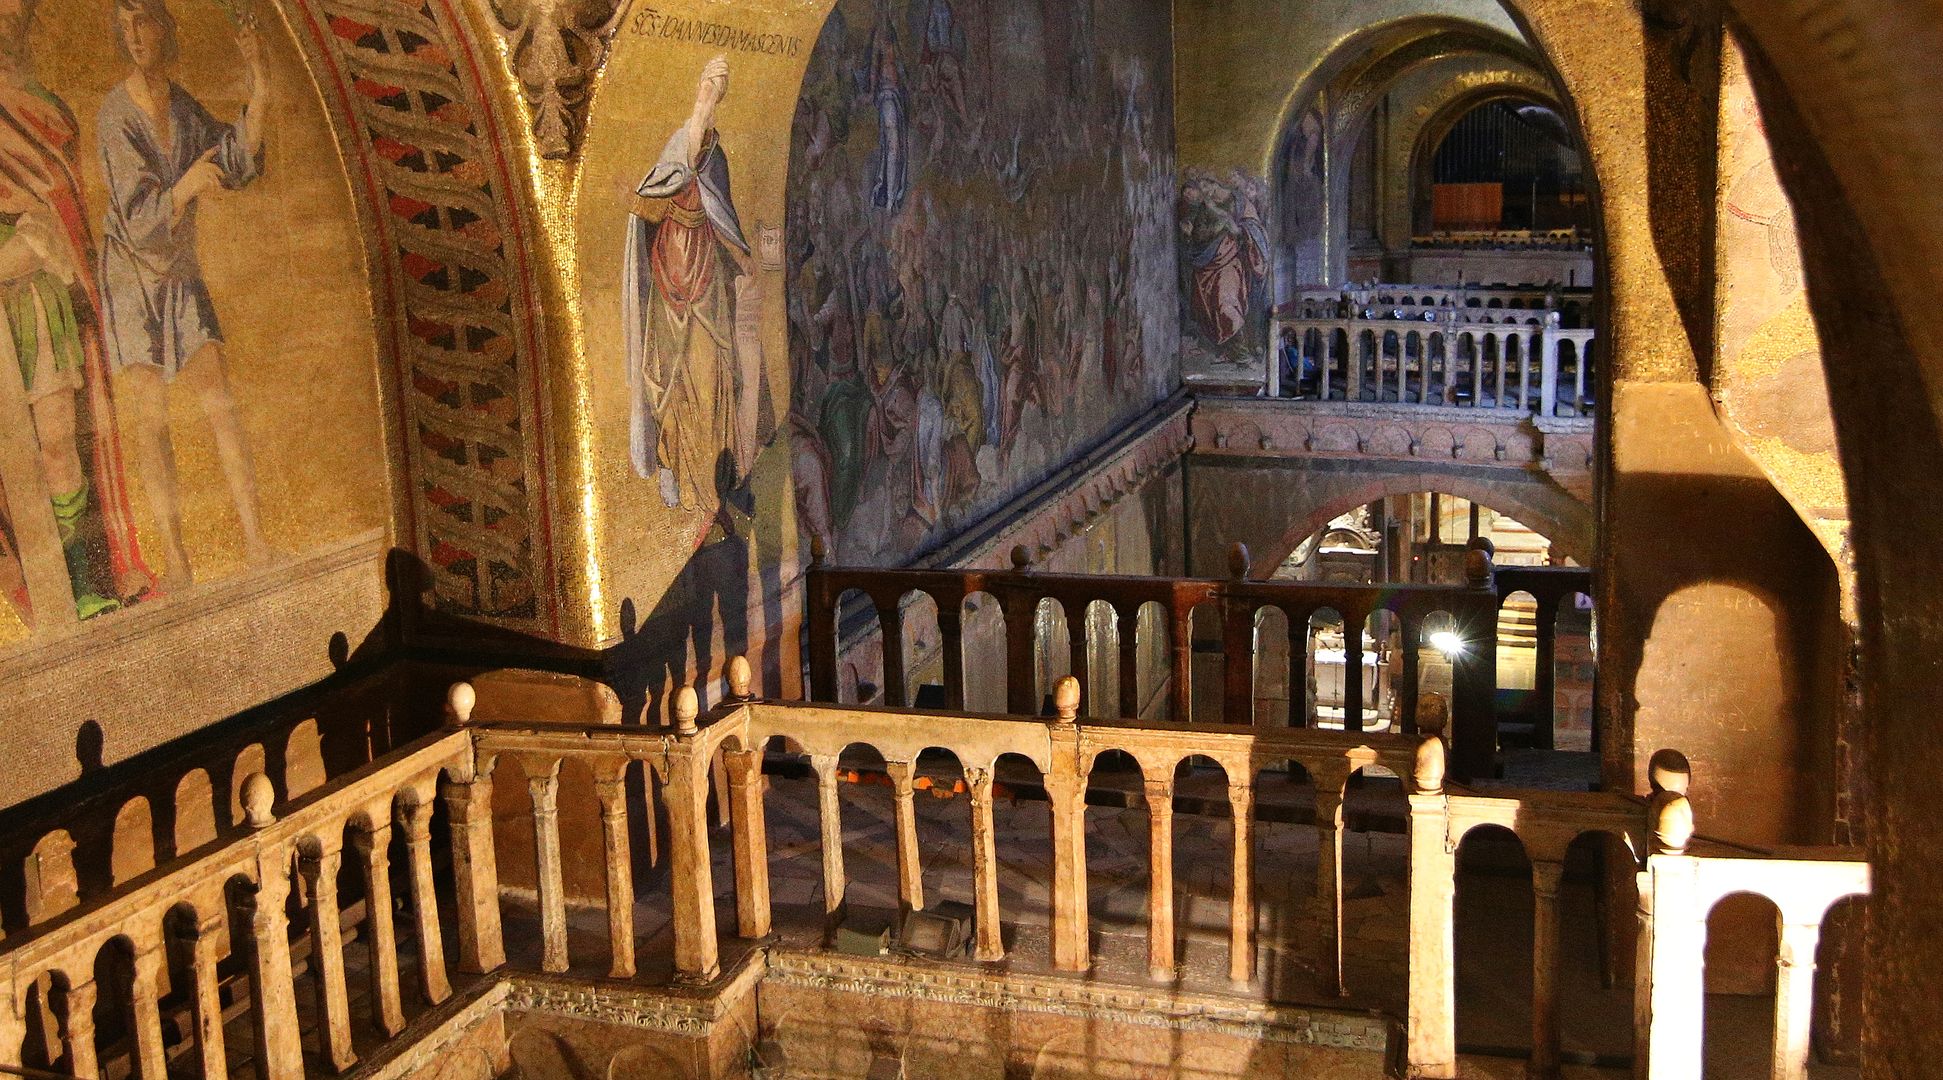 Benátky_Bazilika sv. Marka_interiér (10)